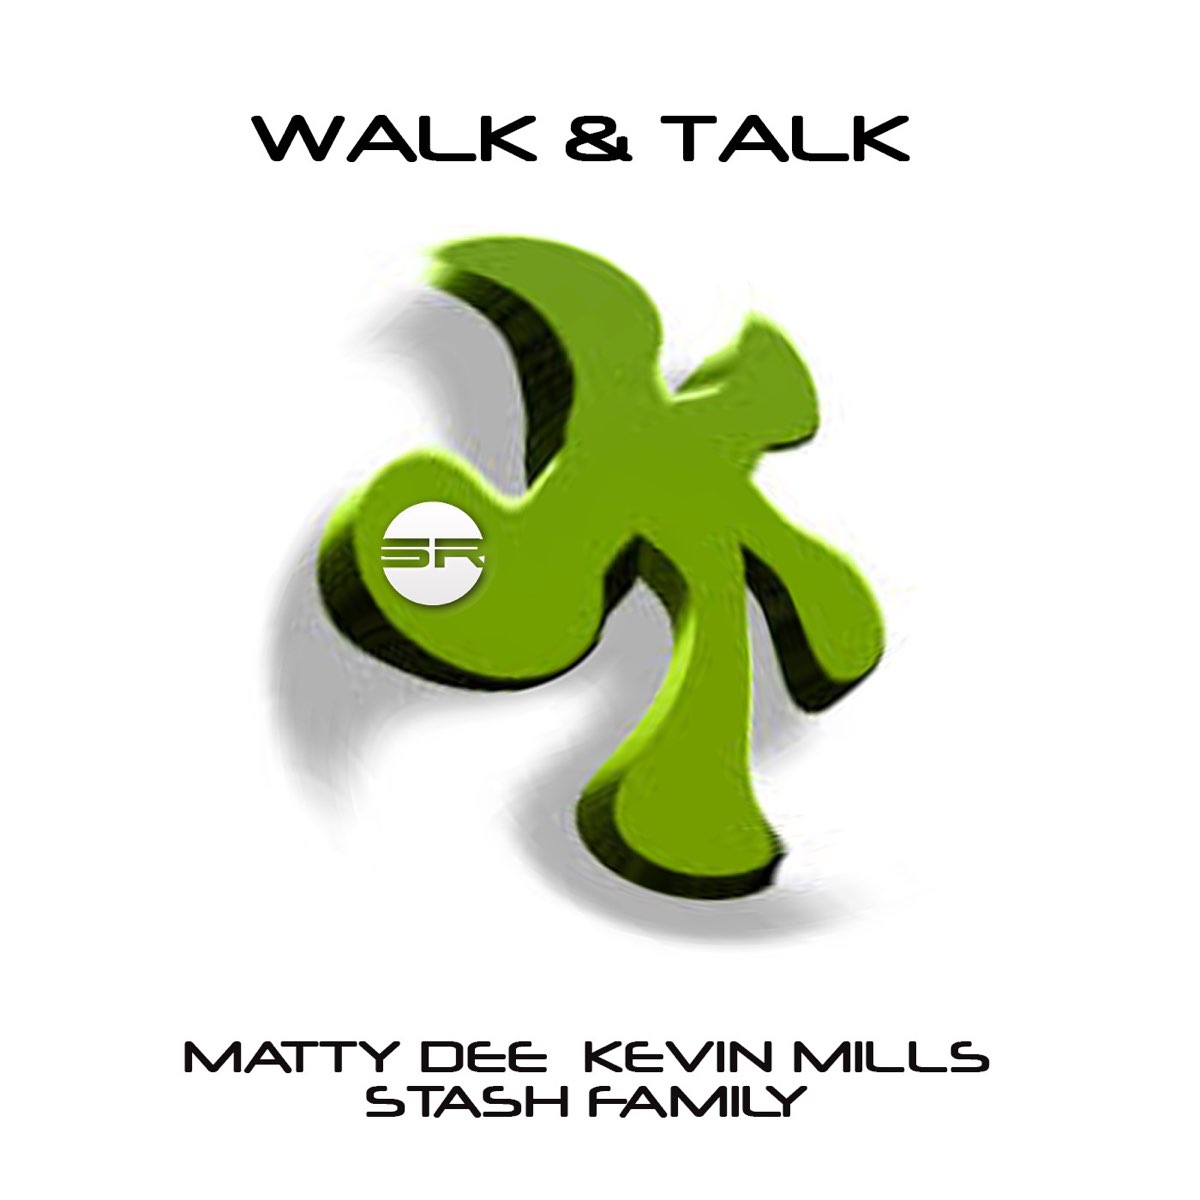 Walk talk. Walk the talk Графика. Walk & talk by.